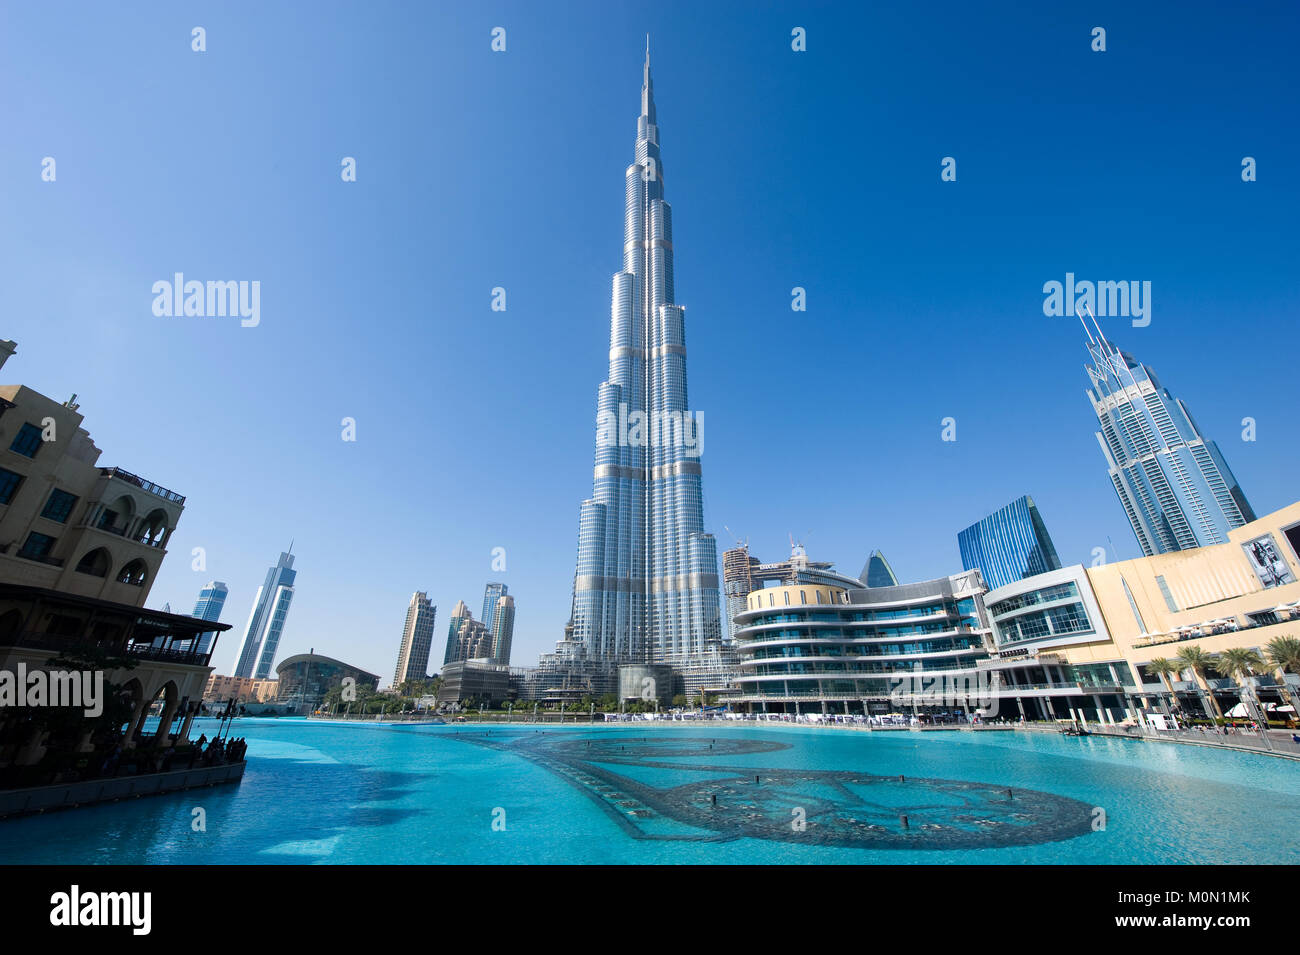 DUBAI, VEREINIGTE ARABISCHE EMIRATE - Jan 02, 2018: Der Burj Khalifa in Dubai das höchste Gebäude der Welt mit 828 Meter hoch. Stockfoto